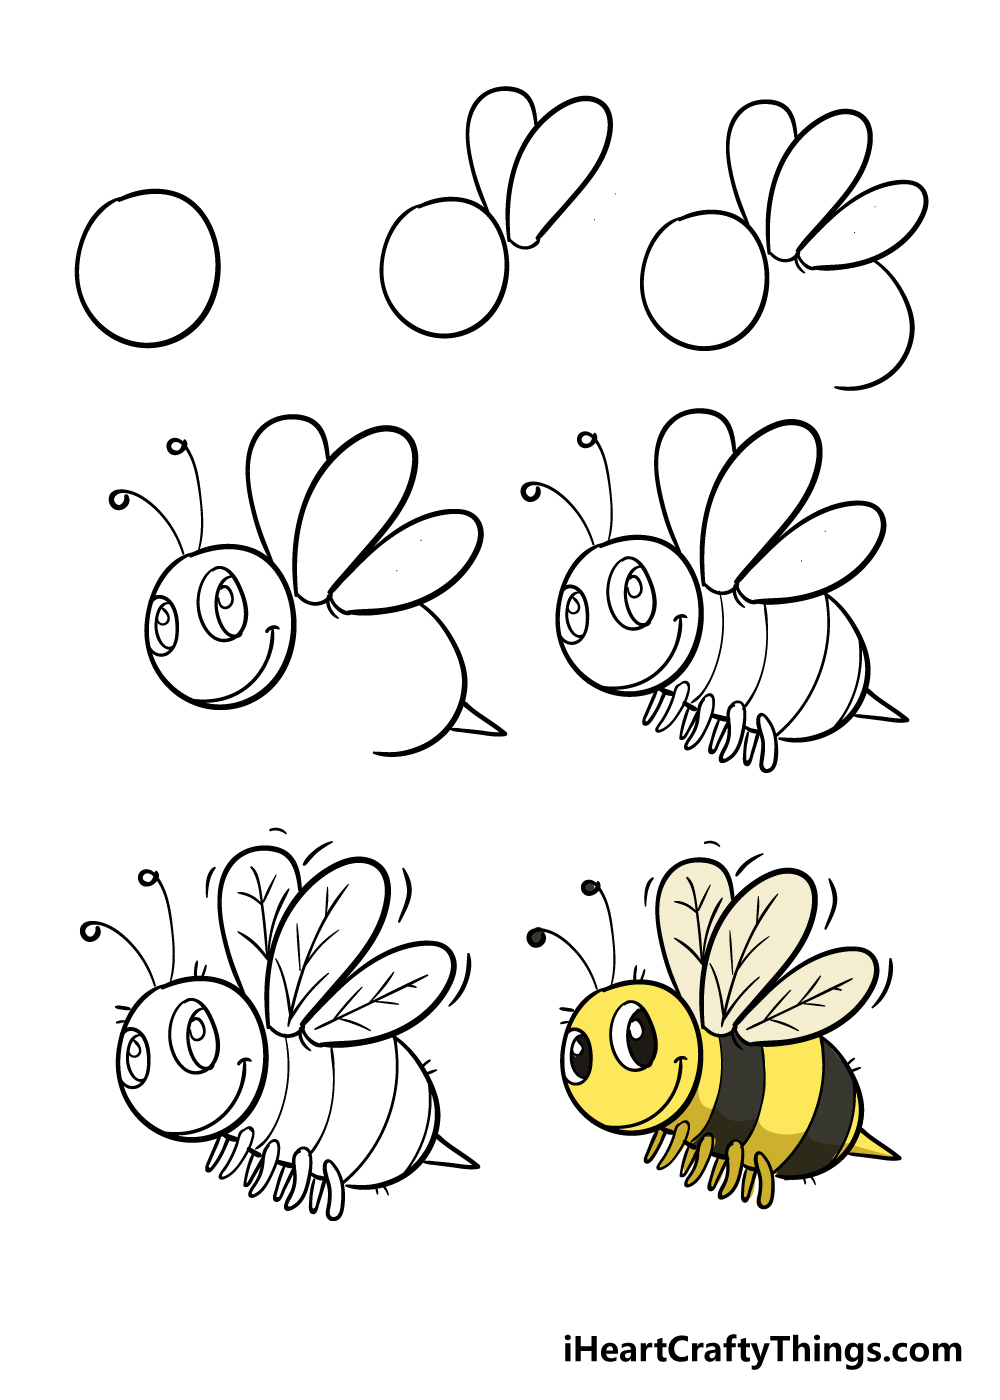 Bee in 7 Steps - Hướng dẫn chi tiết cách vẽ con ong đơn giản với 7 bước cơ bản